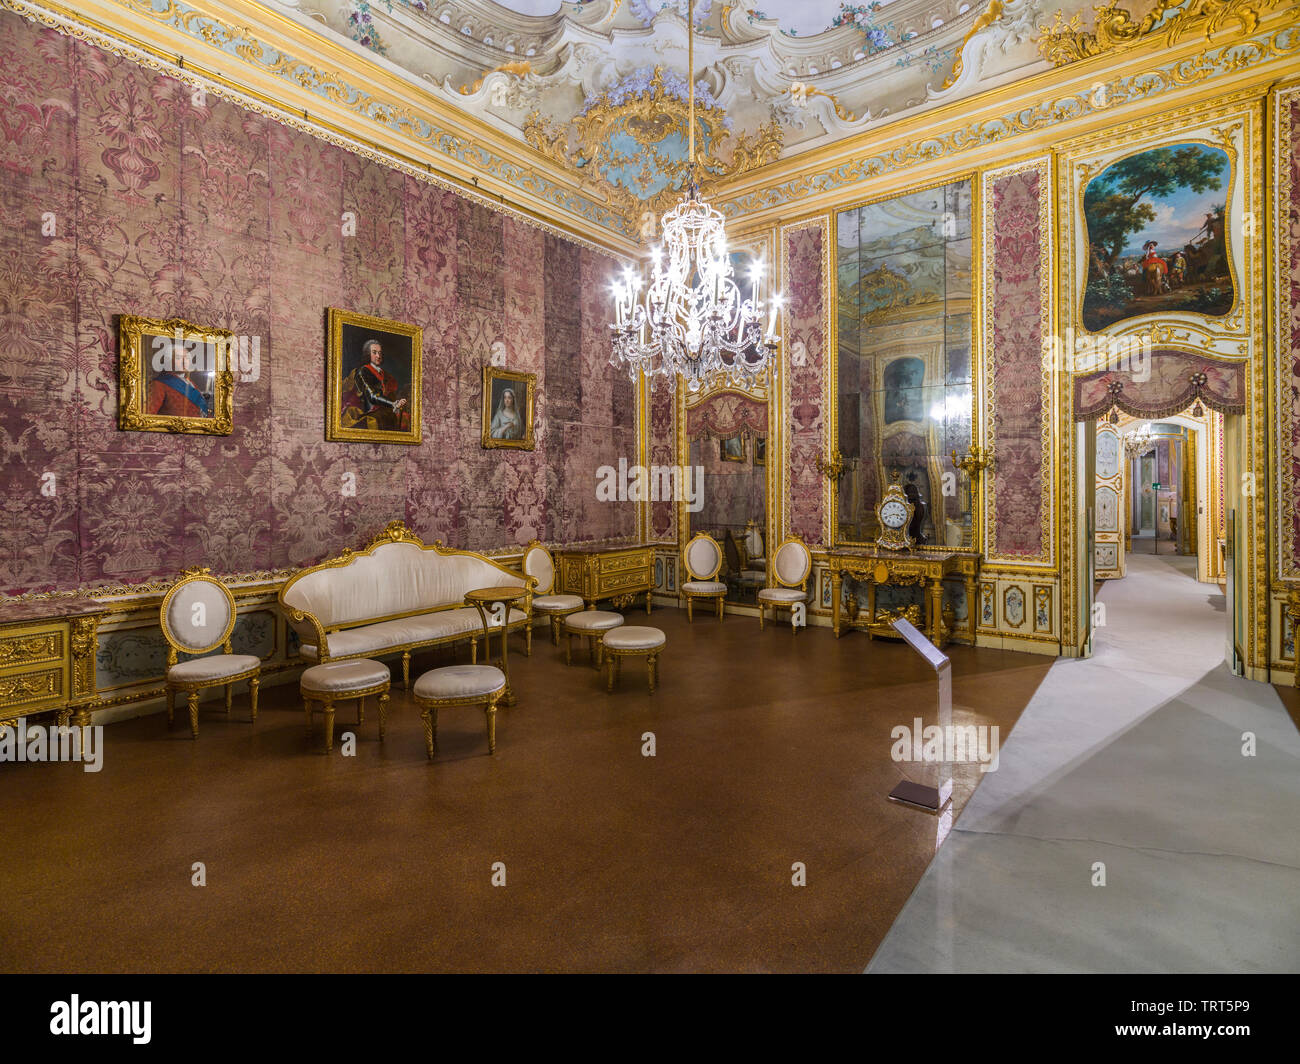 Stupinigi, Italia - 28 Maggio 2019: nel Castello di Stupinigi, una delle residenze reali (siti del Patrimonio Mondiale) che circondano Torino. Foto Stock